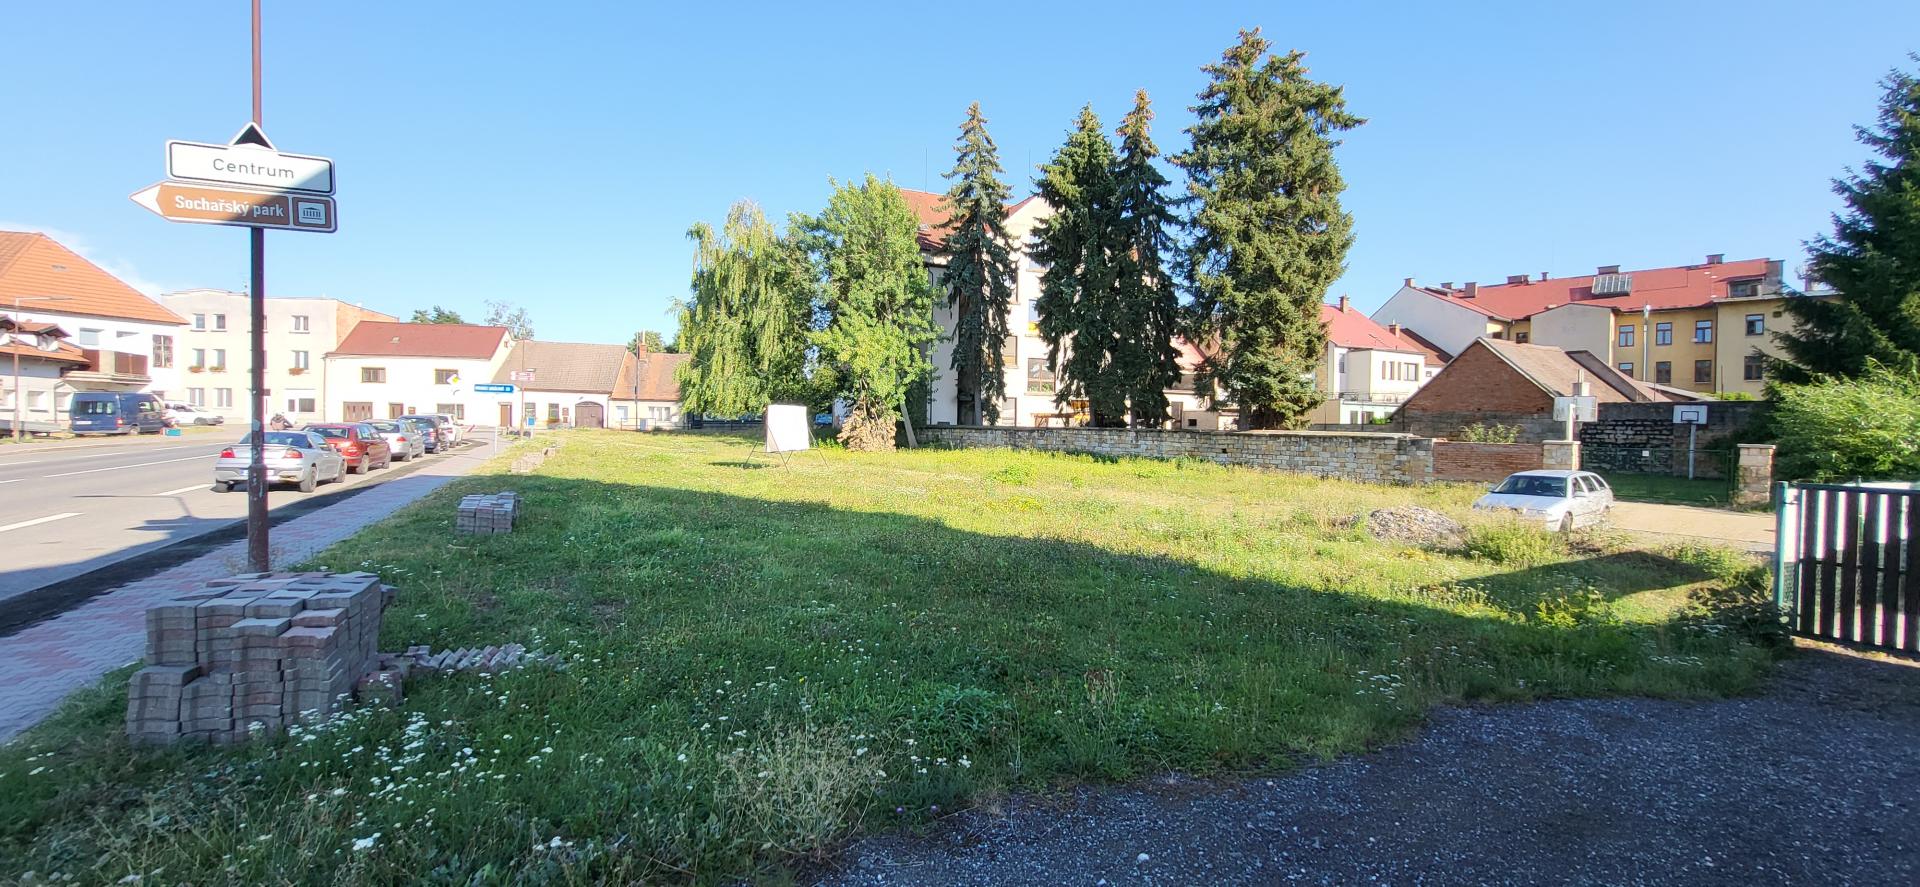 Stavební pozemek smíšený na komerční využití i bydlení v centru města Hořice 917 m2 , obrázek č. 1